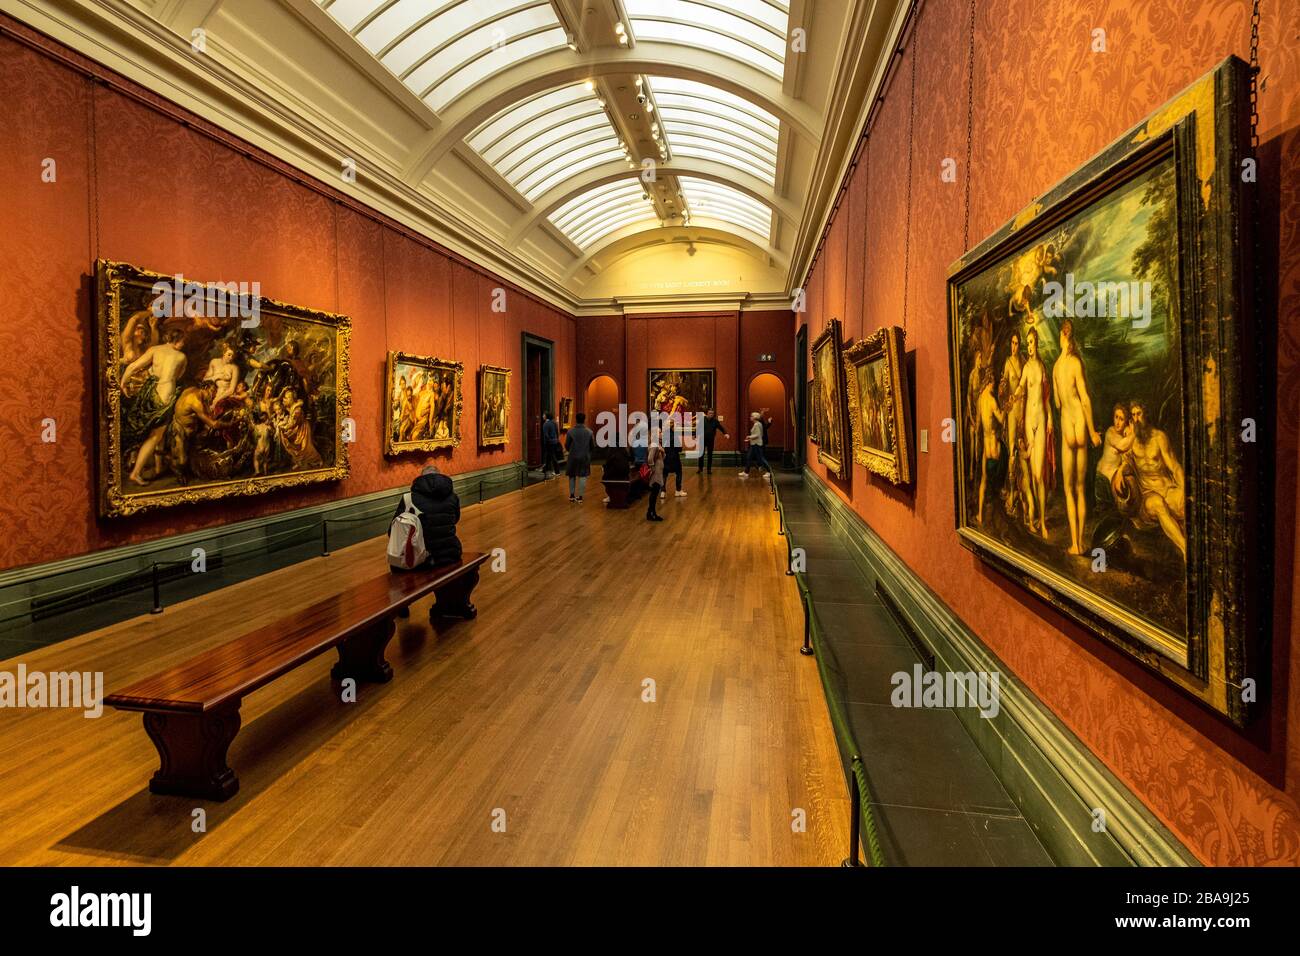 LONDON - Interior der National Portrait Gallery - ein Wahrzeichen und eine beliebte Besucherattraktion am Trafalgar Square. Stockfoto